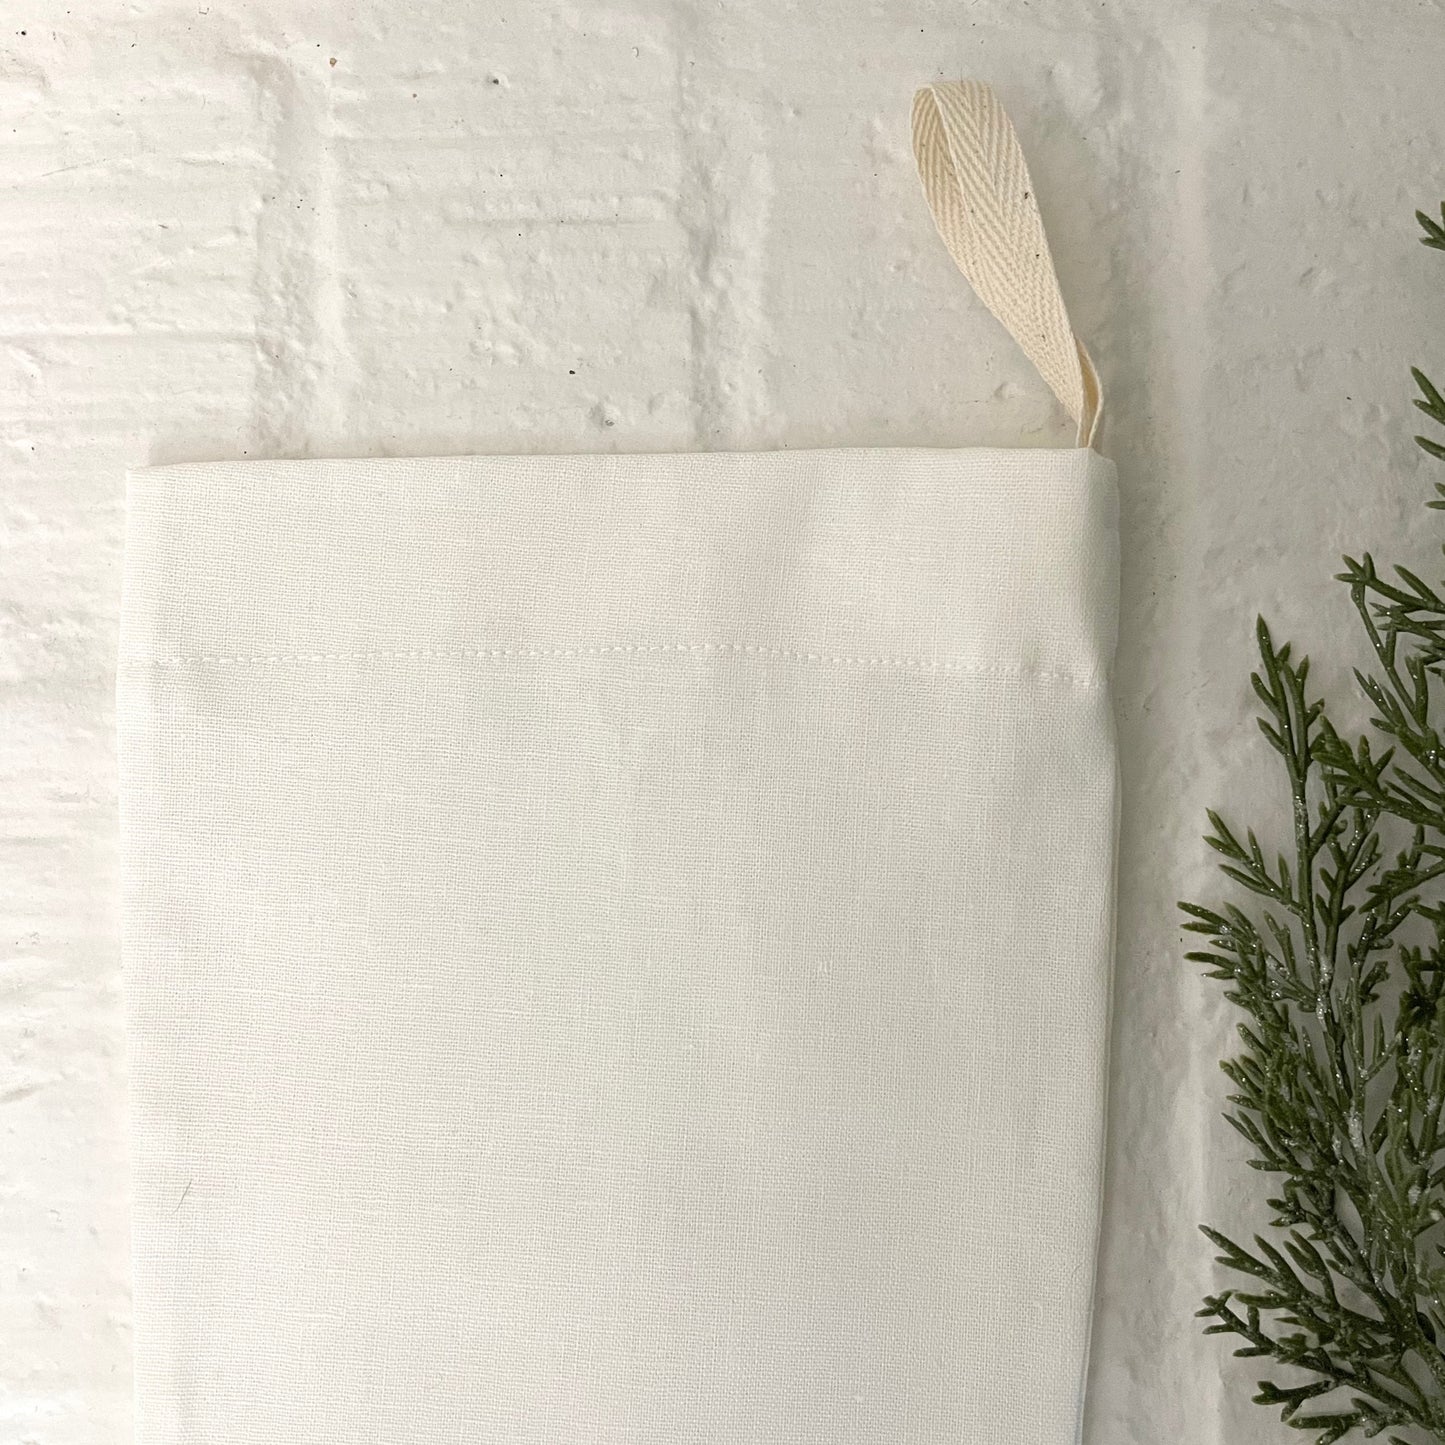 off-white handmade linen Christmas stocking